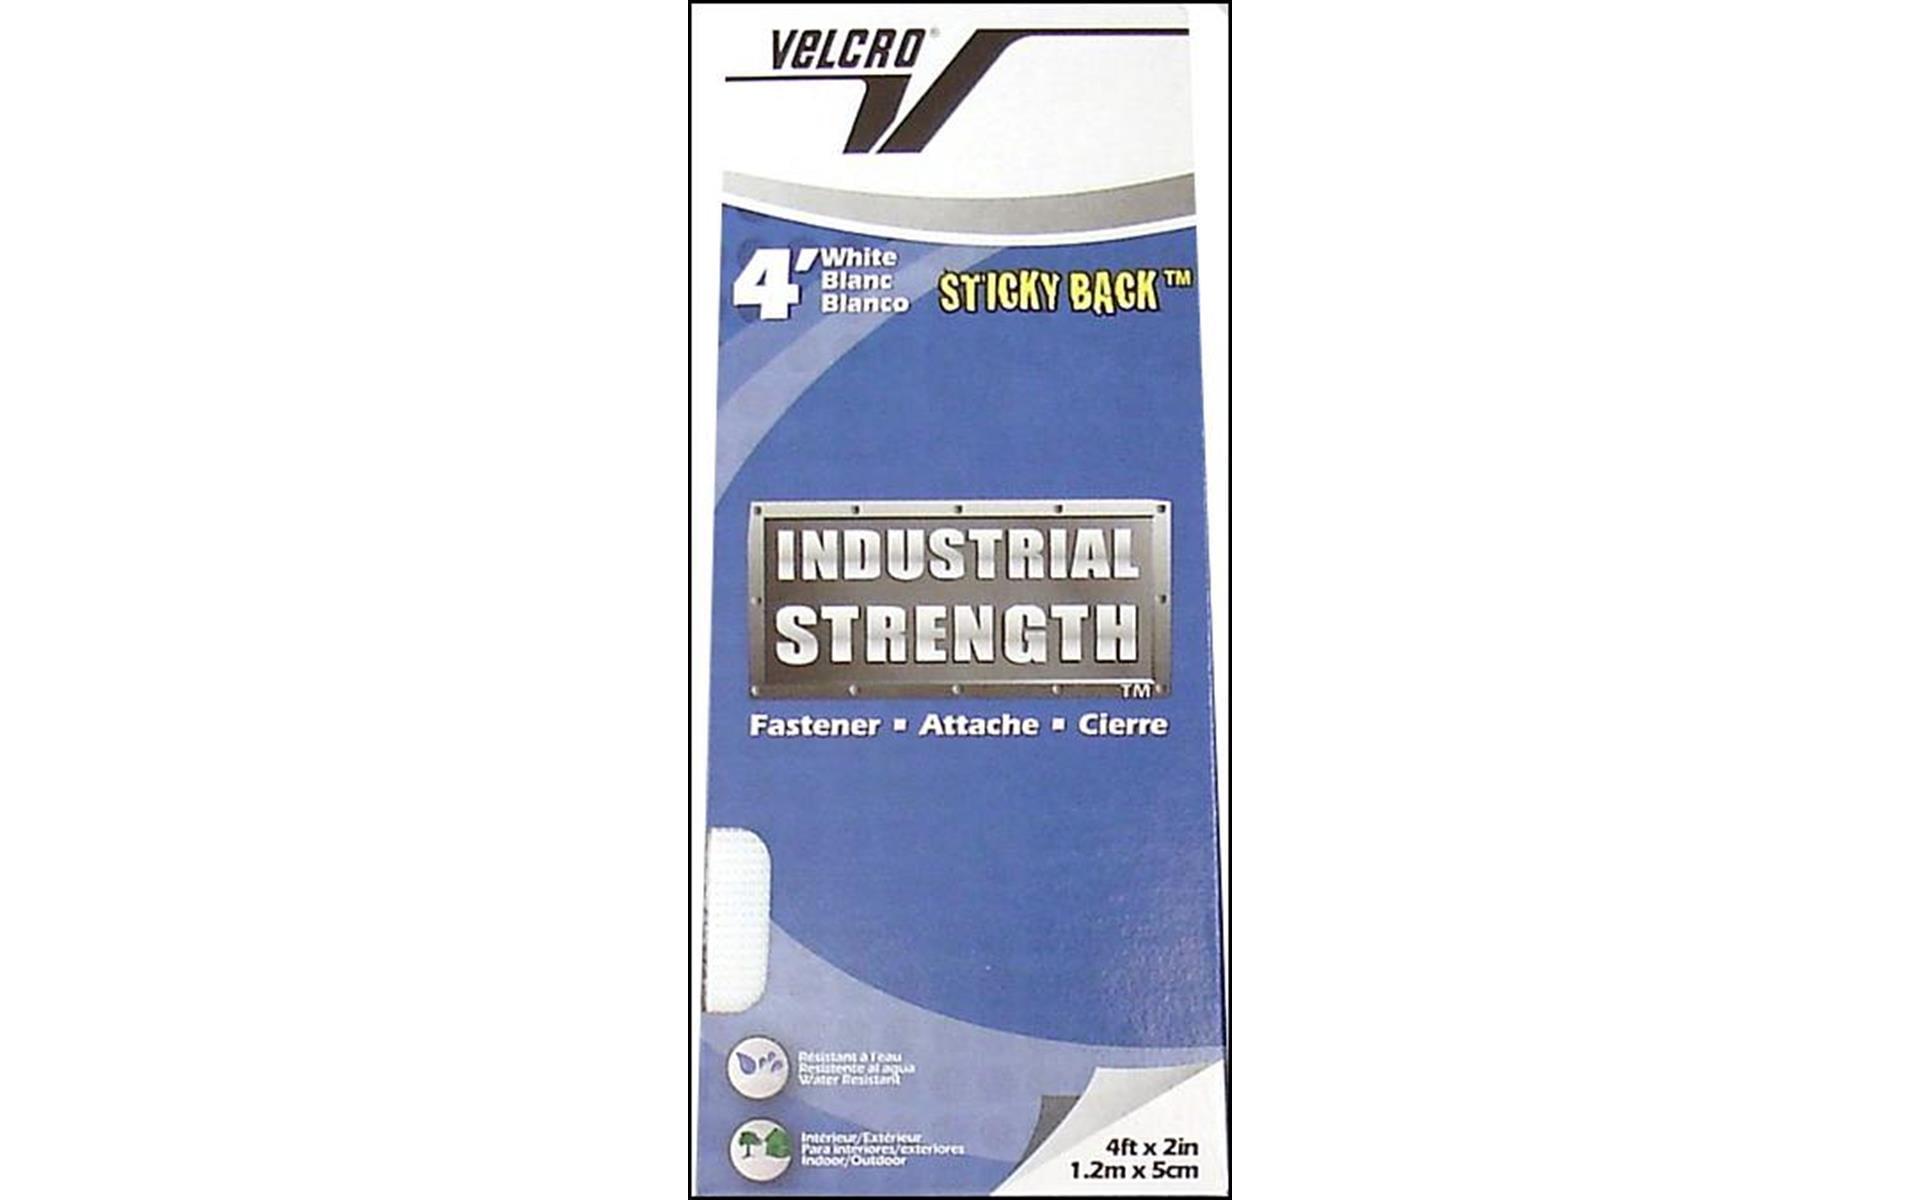 Industrial Strength Tape Velcro Size 15 ft x 2 in Waterproof Heavy